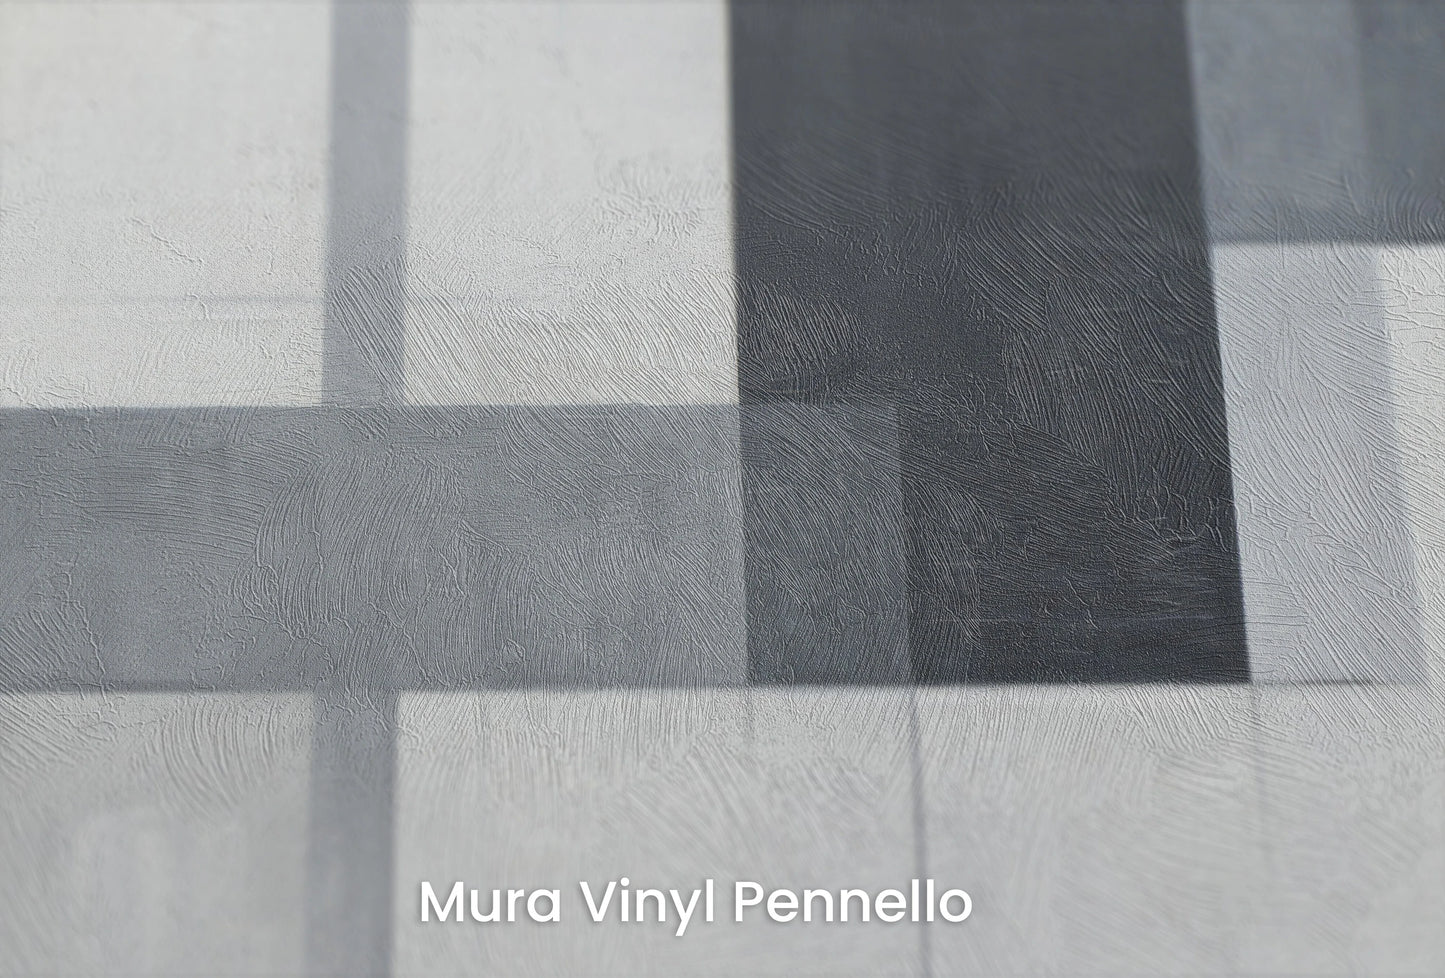 Zbliżenie na artystyczną fototapetę o nazwie Abstract Intersection na podłożu Mura Vinyl Pennello - faktura pociągnięć pędzla malarskiego.